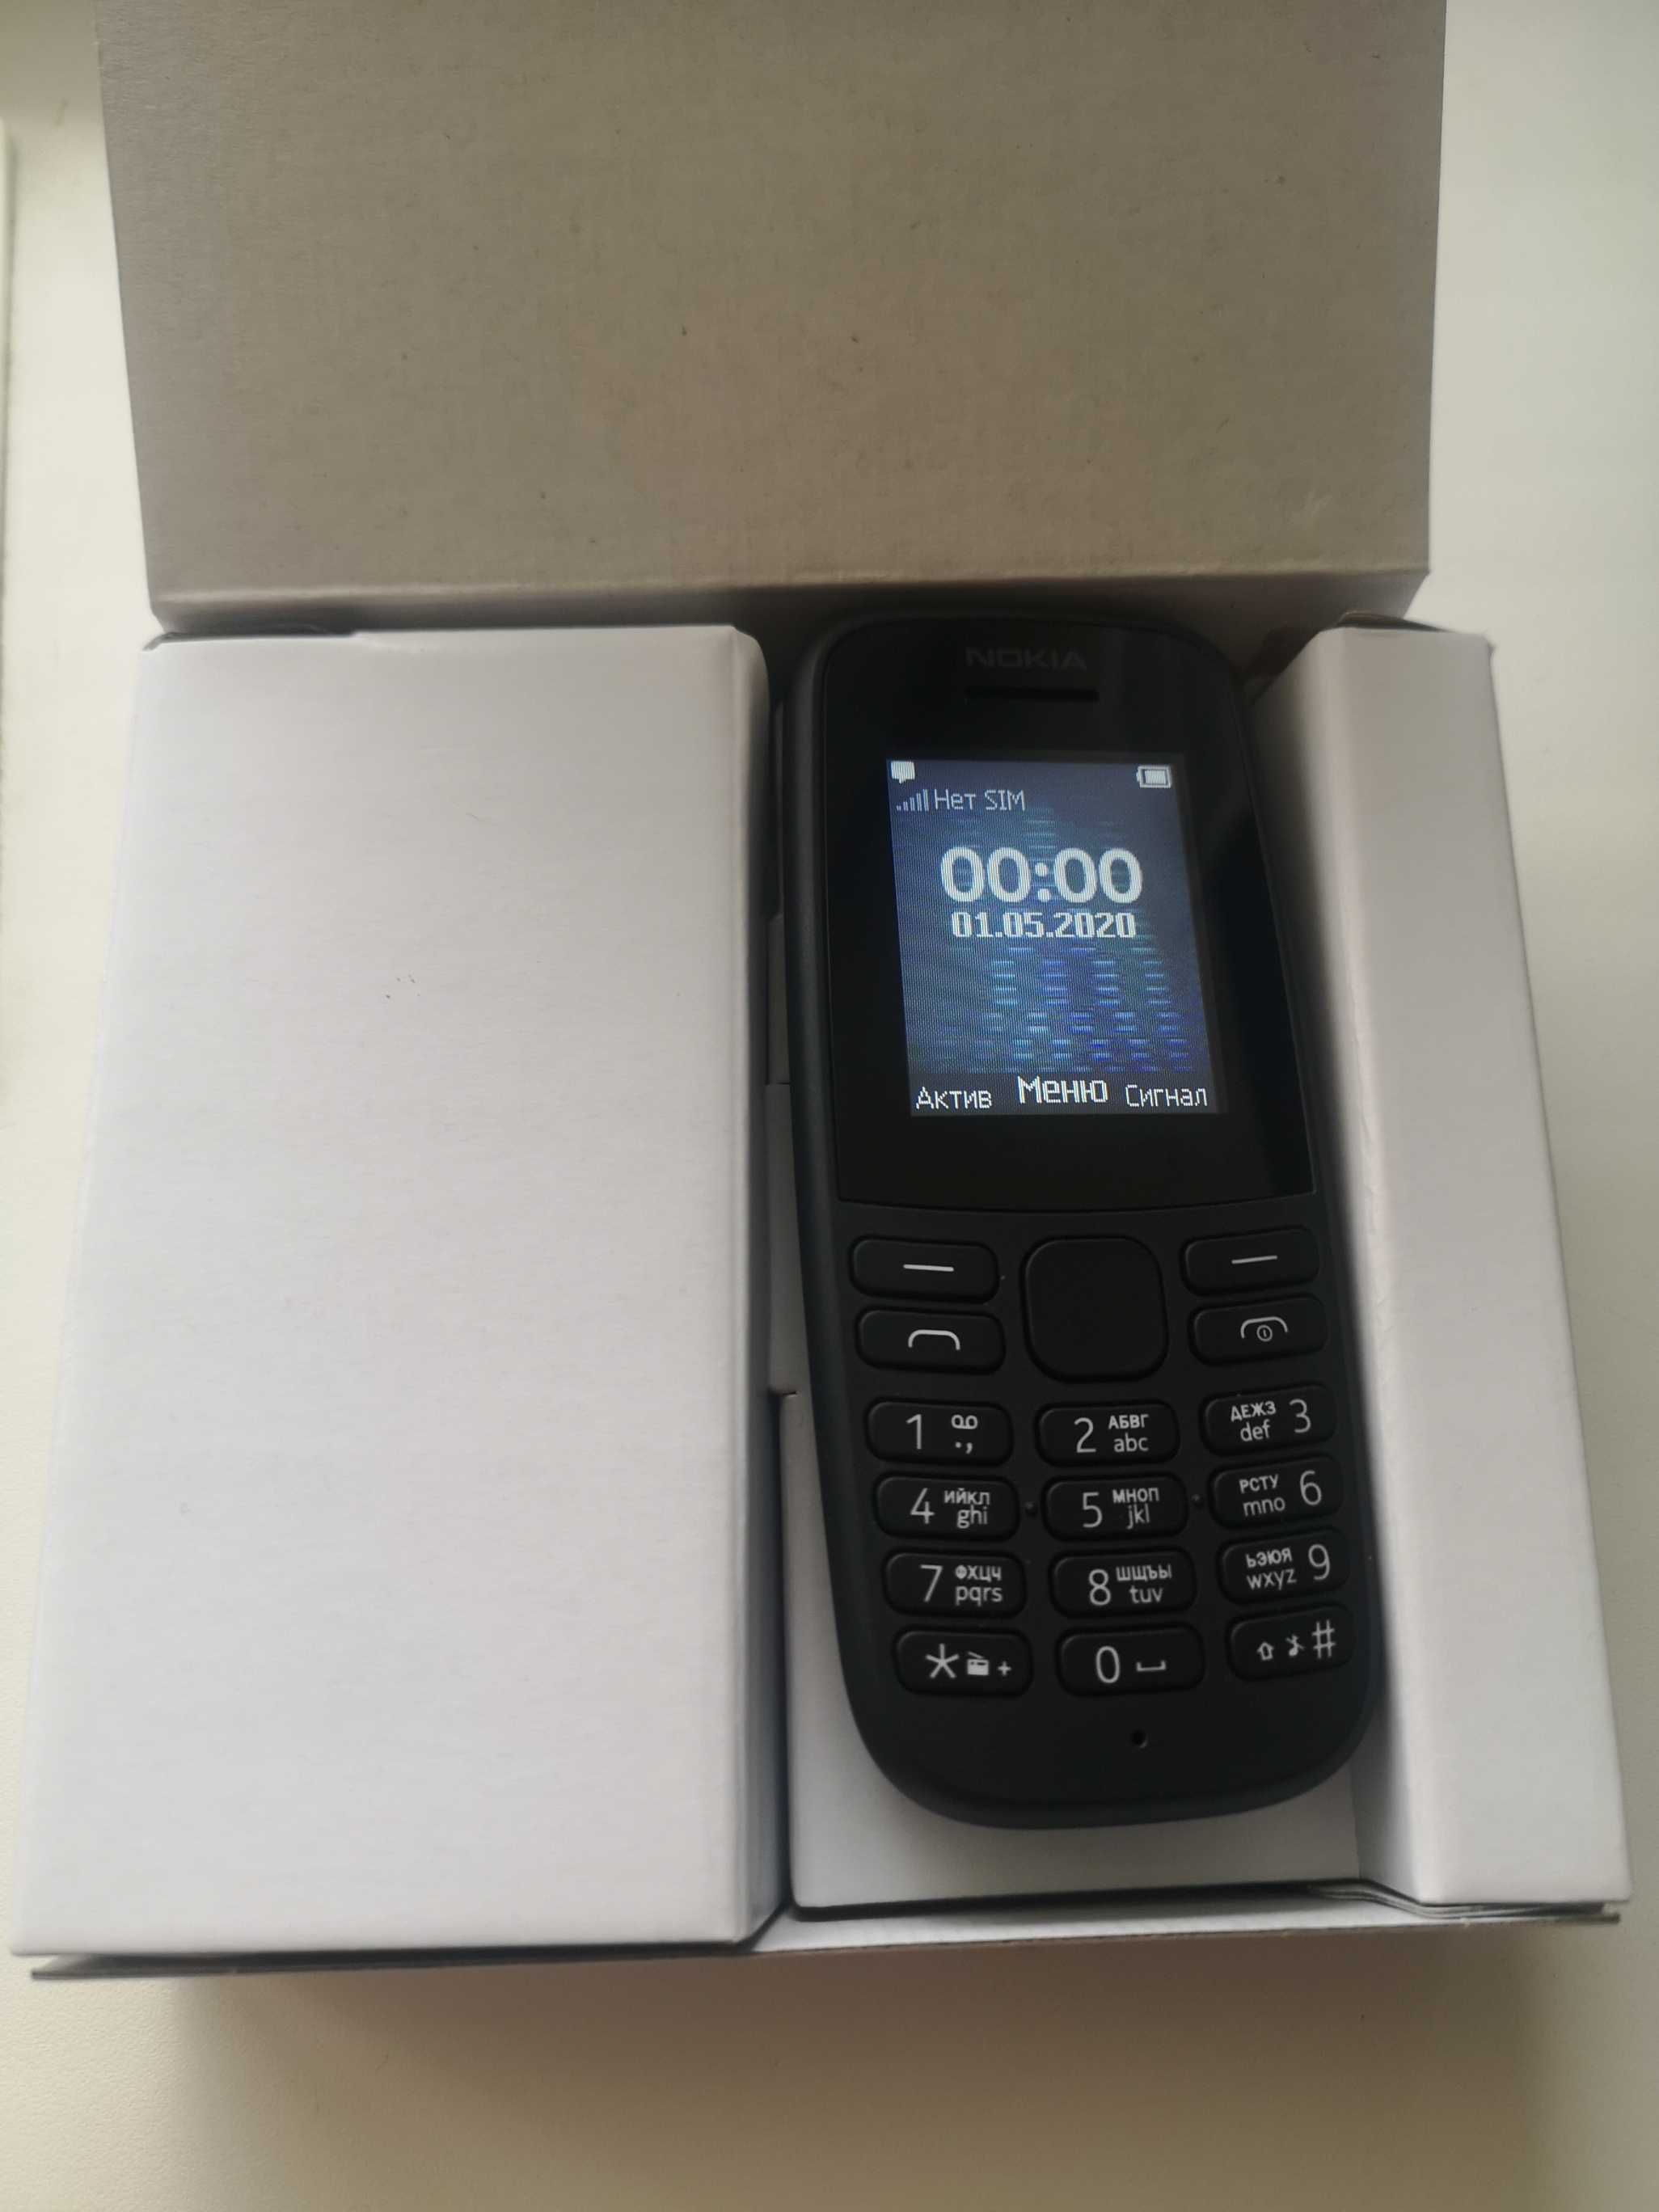 Мобільний телефон Nokia 106 New Grey Dual sim ЗАМЕНА